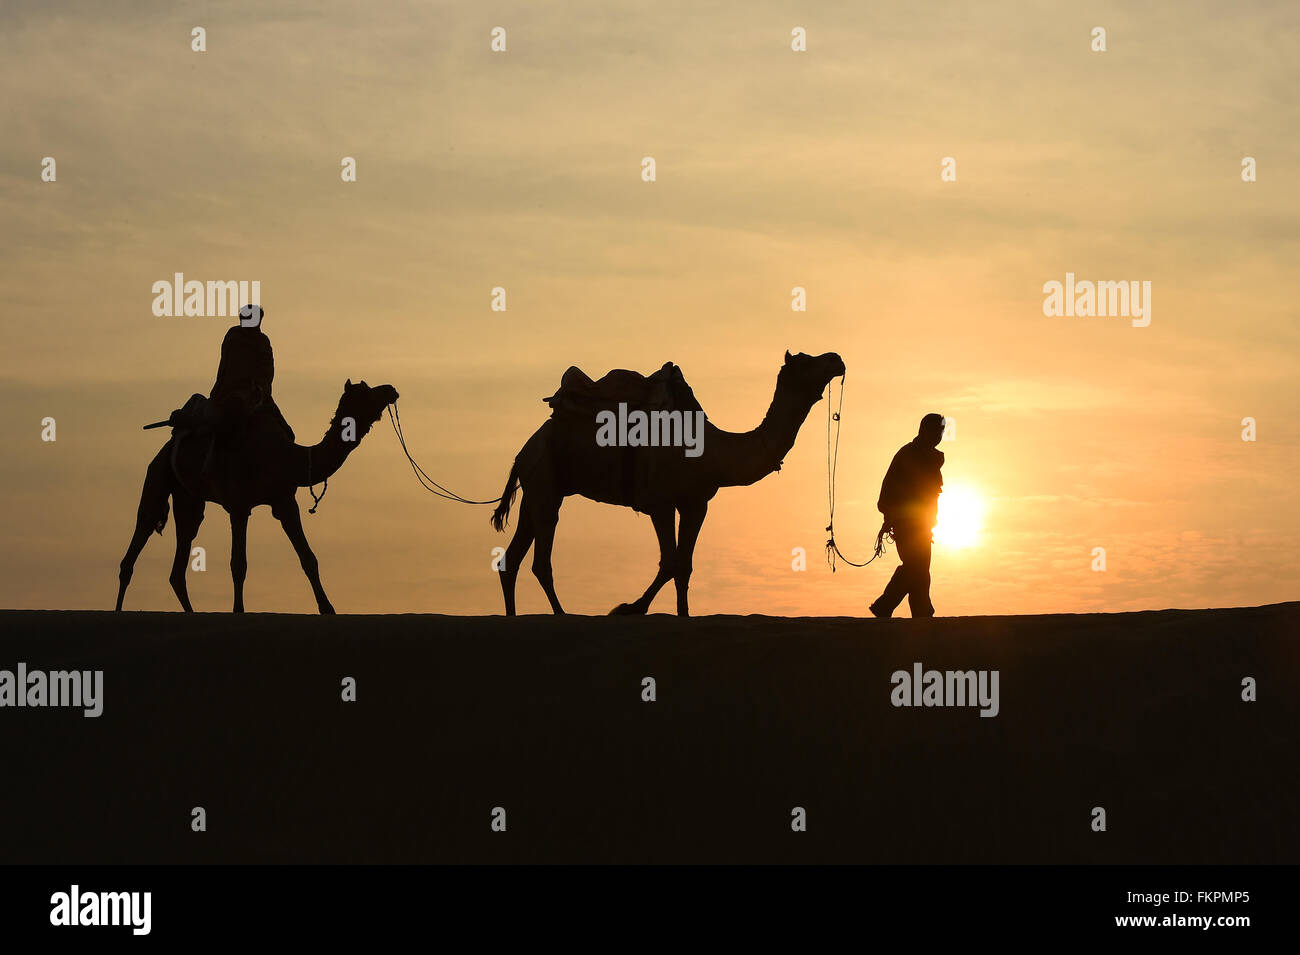 Silhoutte of Camel Trader in the Thar Desert during sunrise. Thar Desert located at Jaisalmer, Rajastan, India. Stock Photo